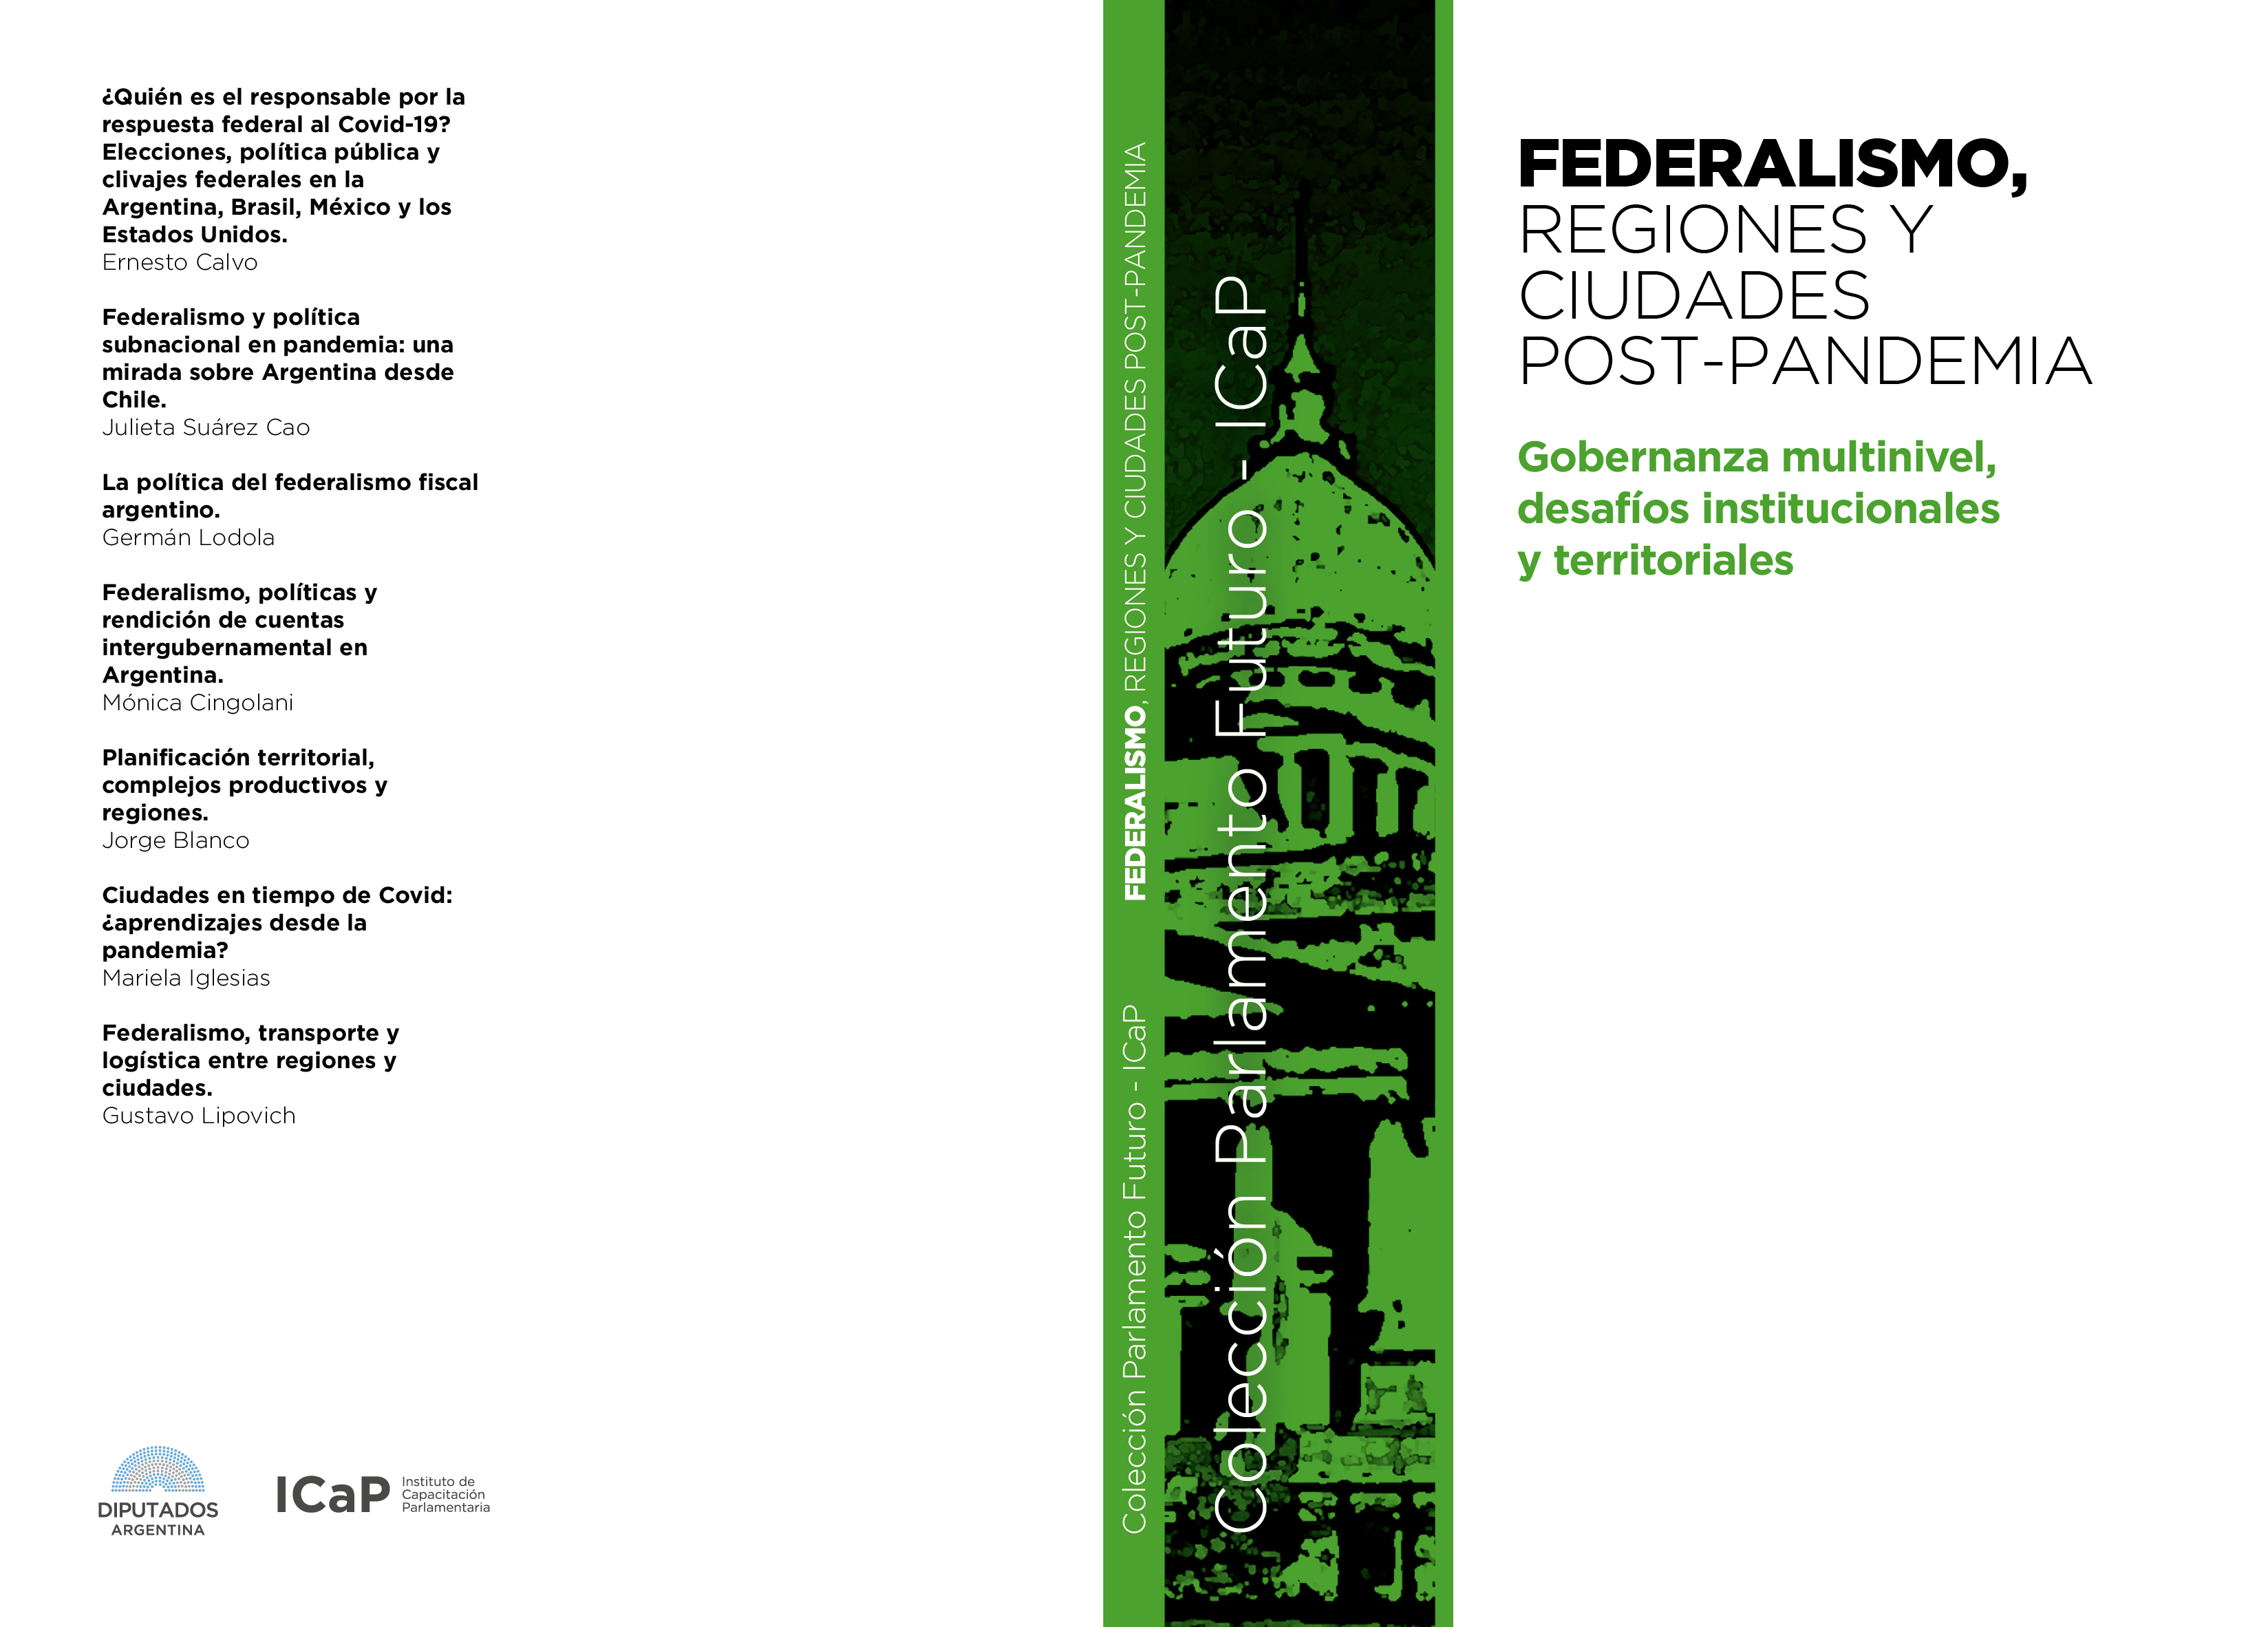 Federalismo regiones y ciiudades post pandemia